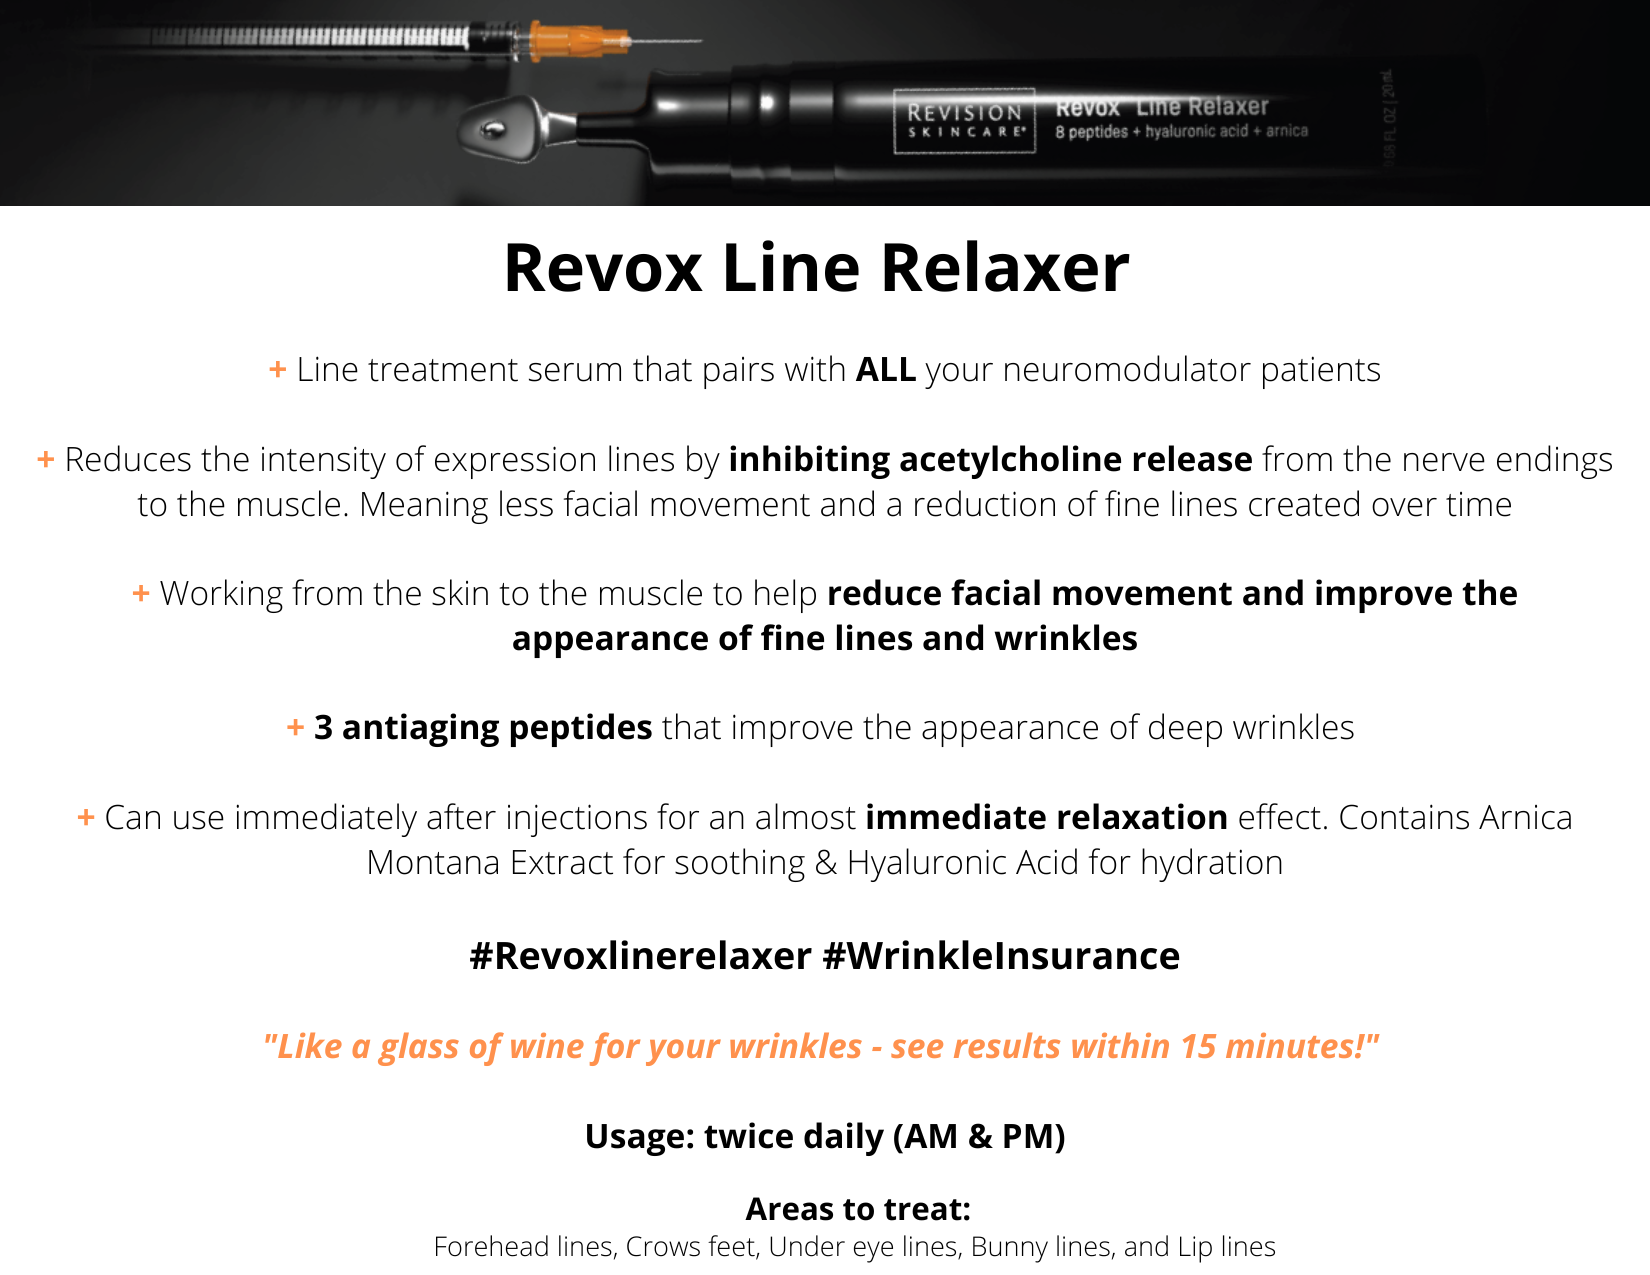 Revox Line Relaxer?